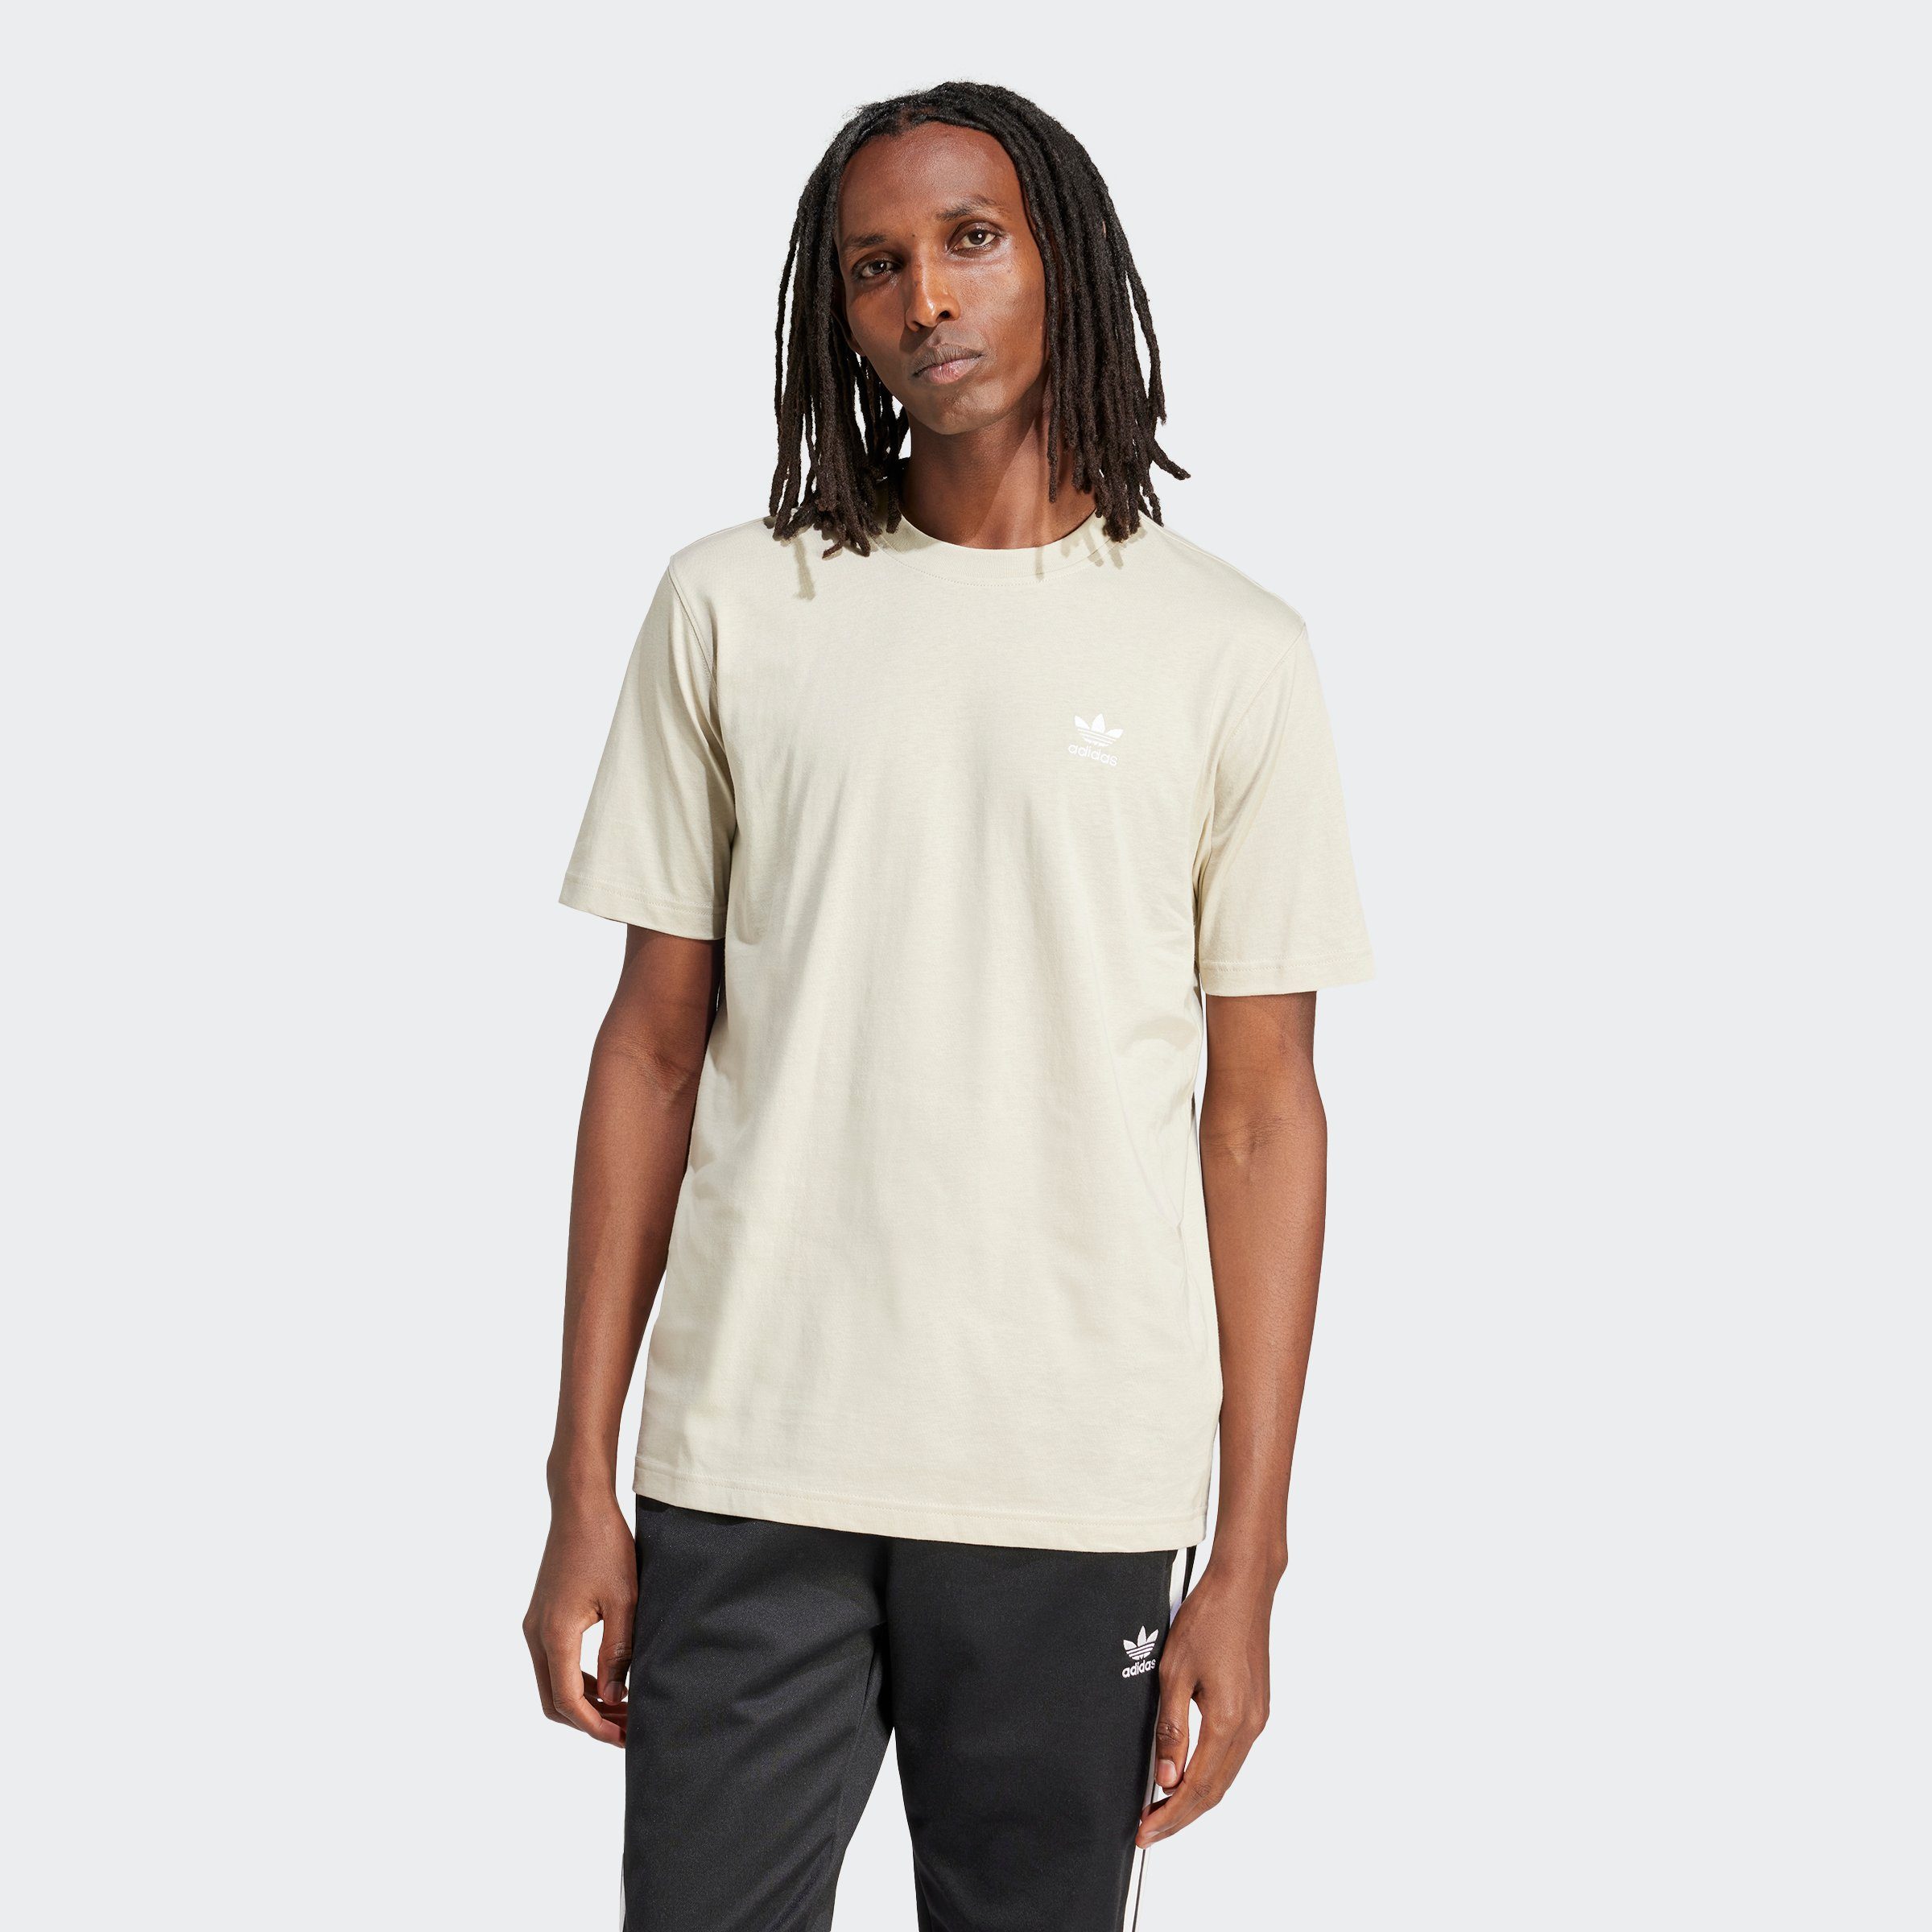 Adidas Originals Essentials T-shirt T-shirts Heren putty grey maat: XL beschikbare maaten:S M L XL